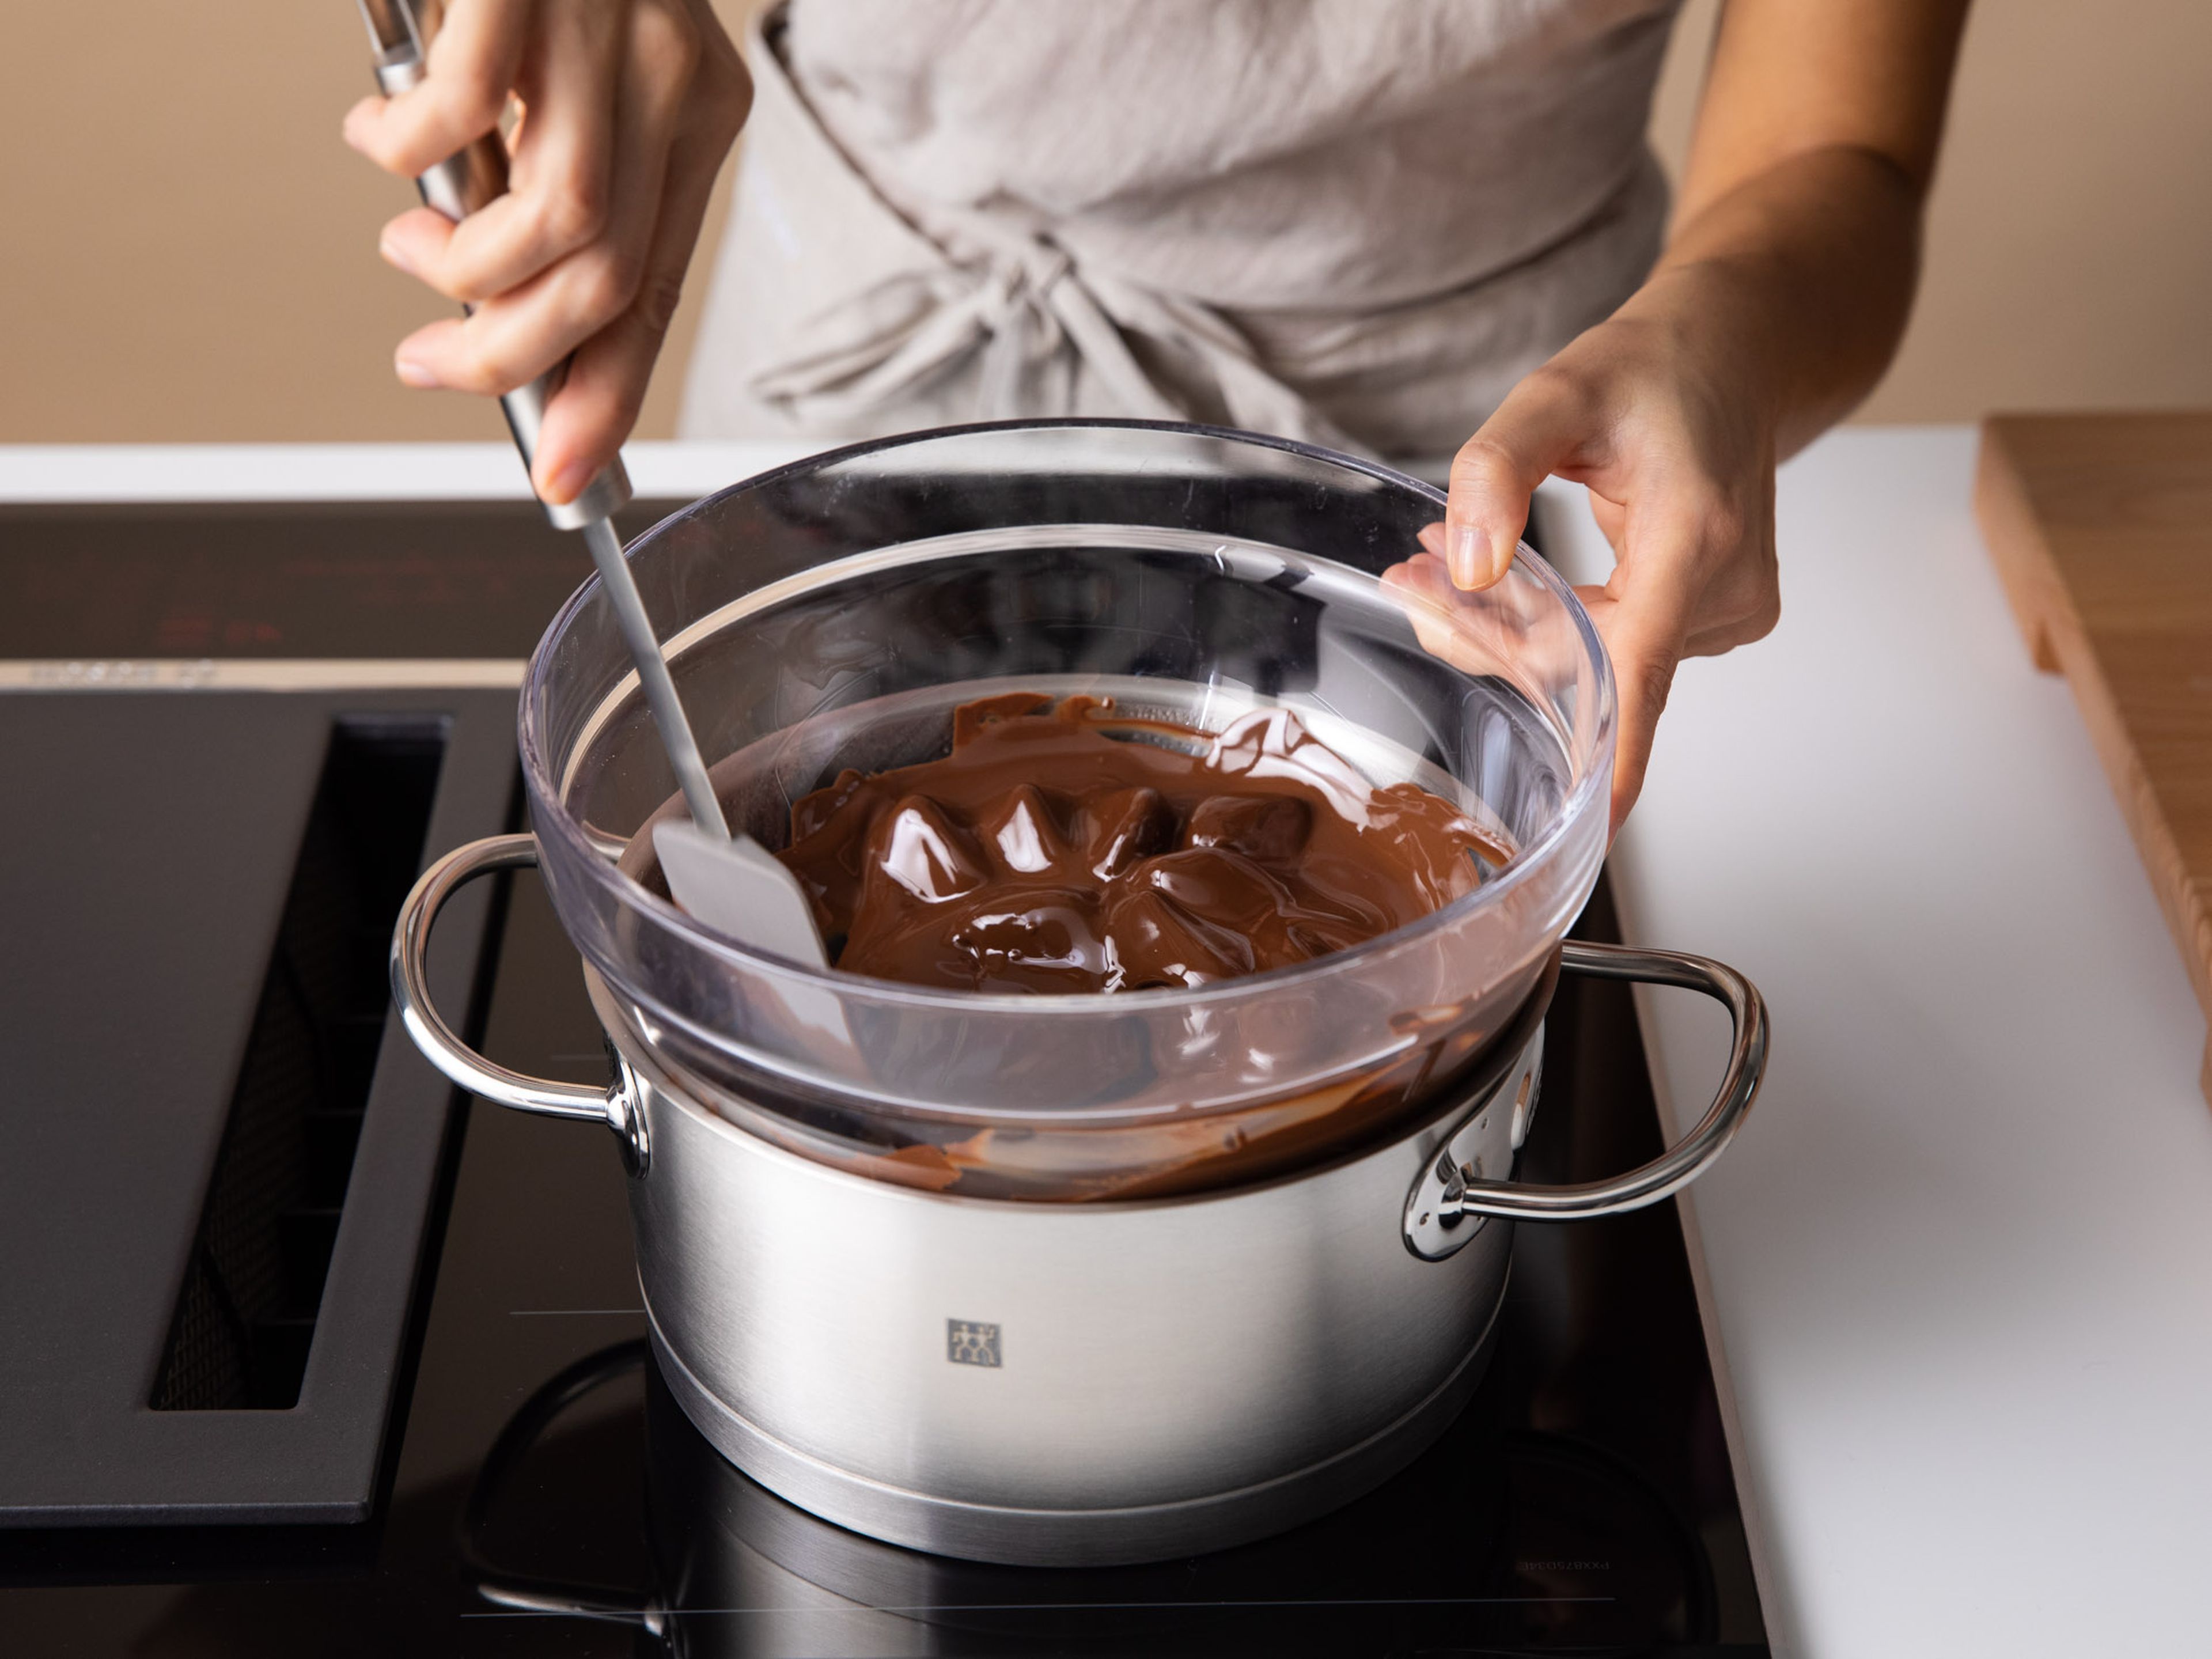 Schokolade in einer hitzebeständigen Schüssel über siedendem Wasser schmelzen lassen.